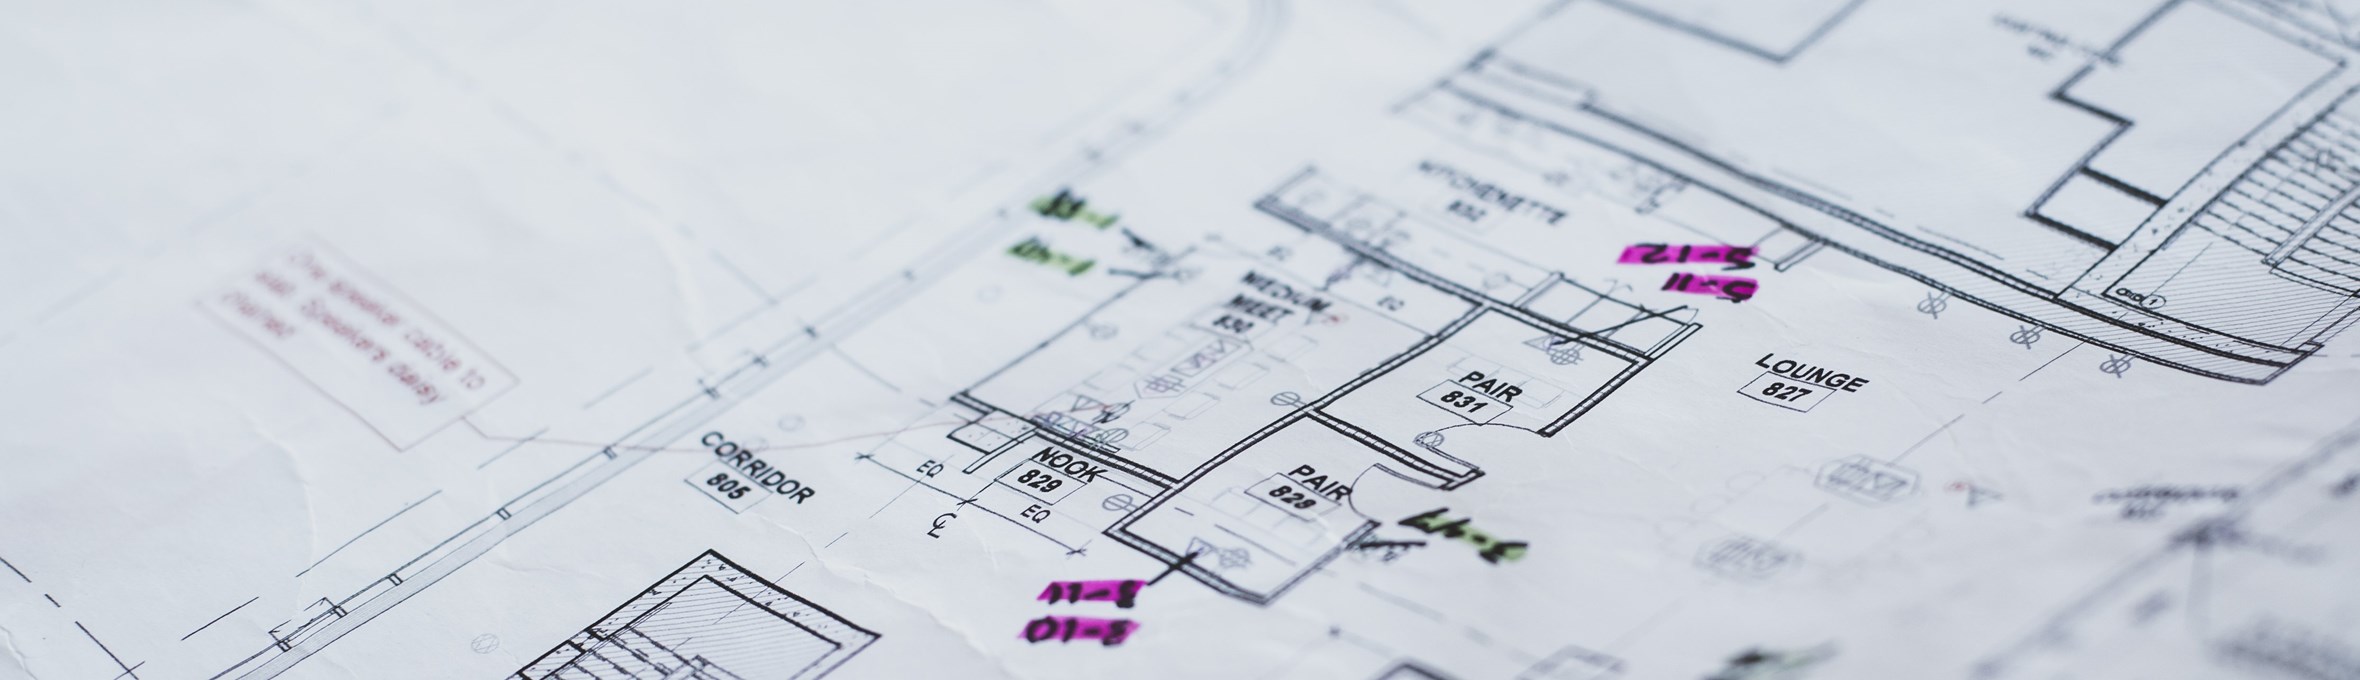 Blueprints for a building construction